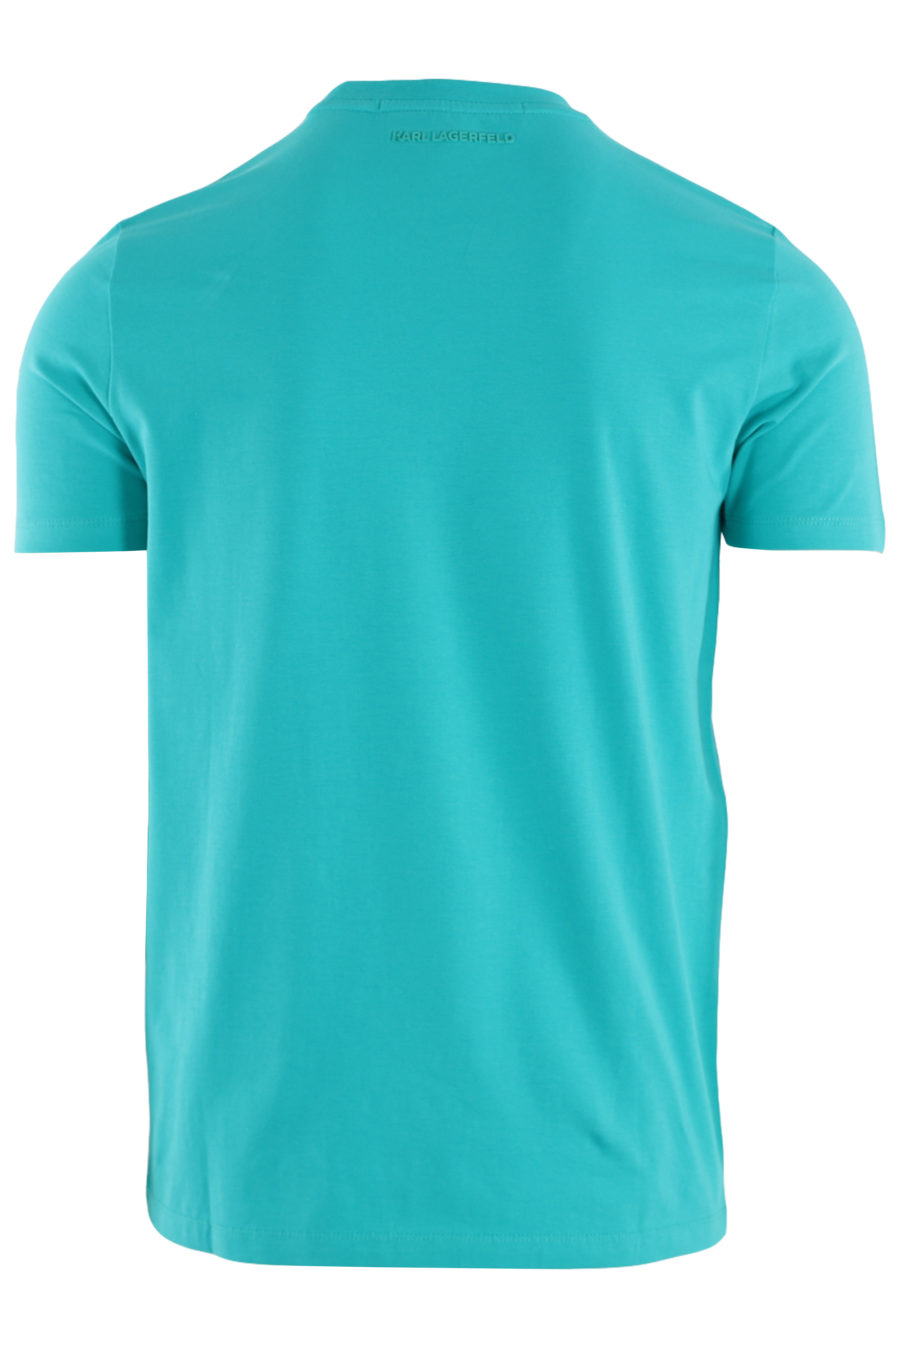 Türkisfarbenes T-Shirt mit kleinem Gummilogo - IMG 8759